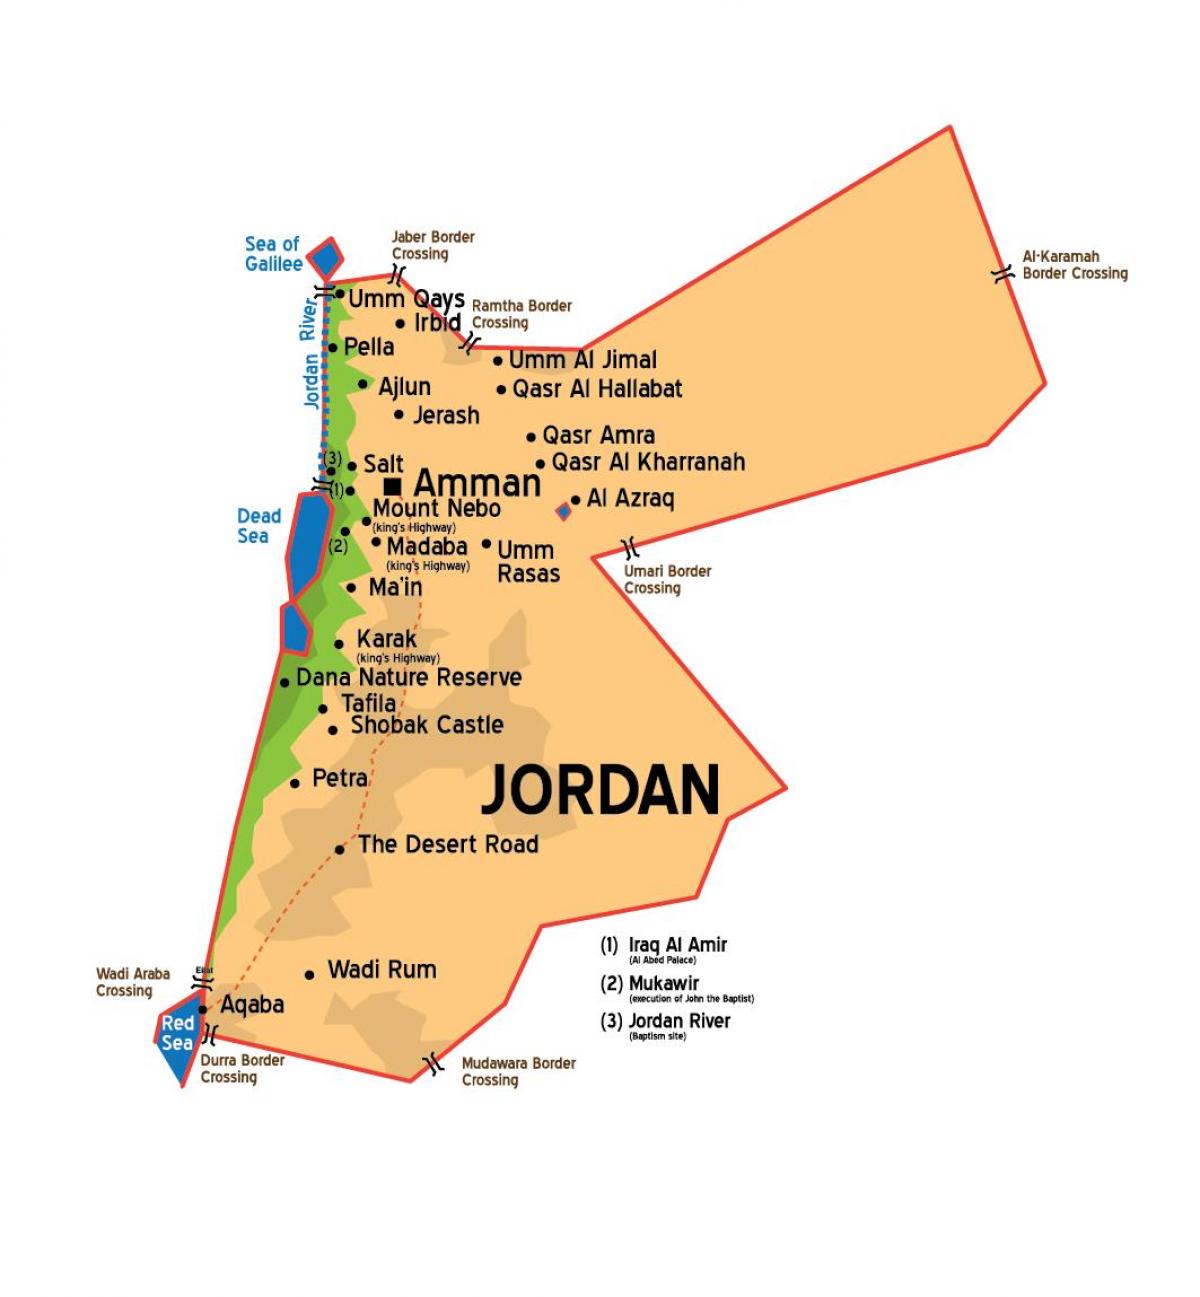 Jordanijos miestus žemėlapyje